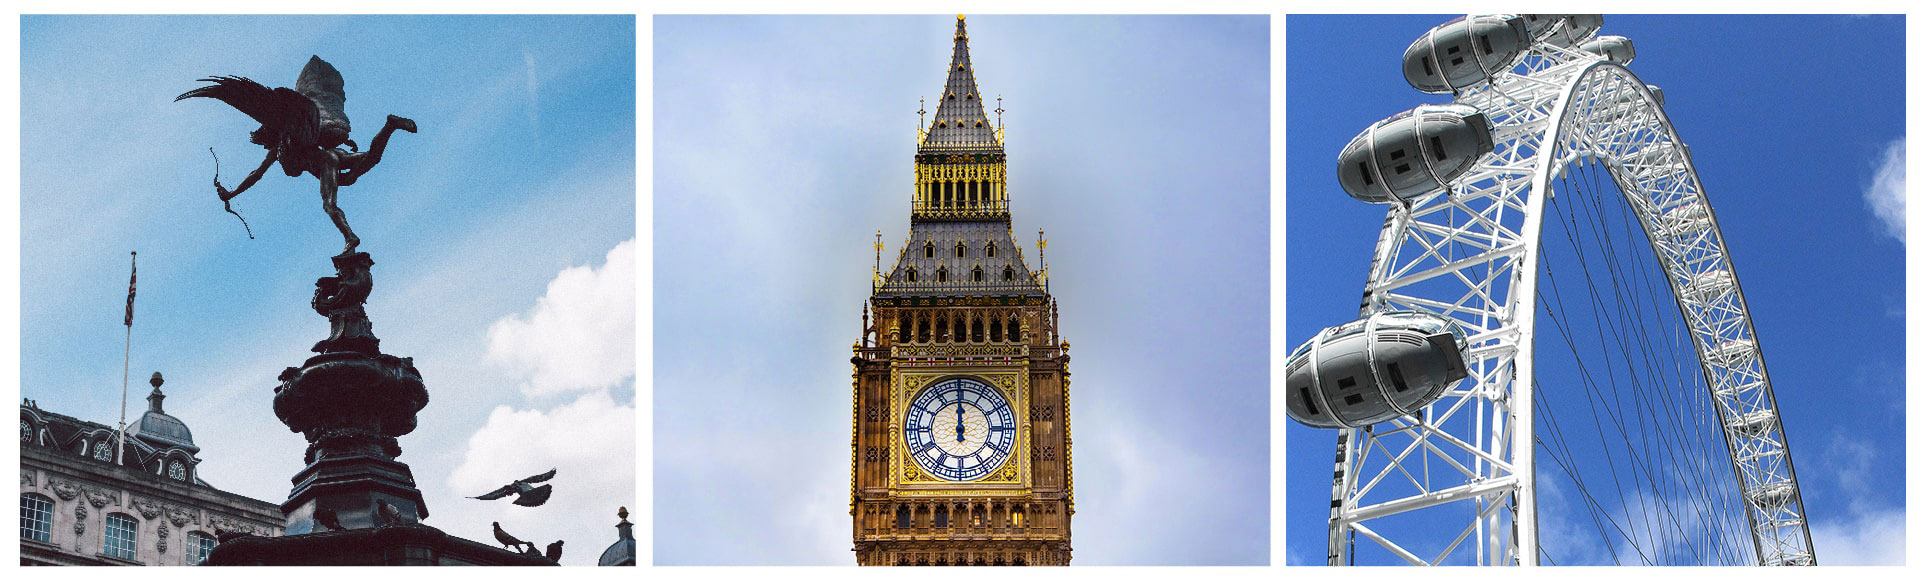 Trois images de Londres les unes à côté des autres: Eros à Picadilly, Big Ben et le London Eye